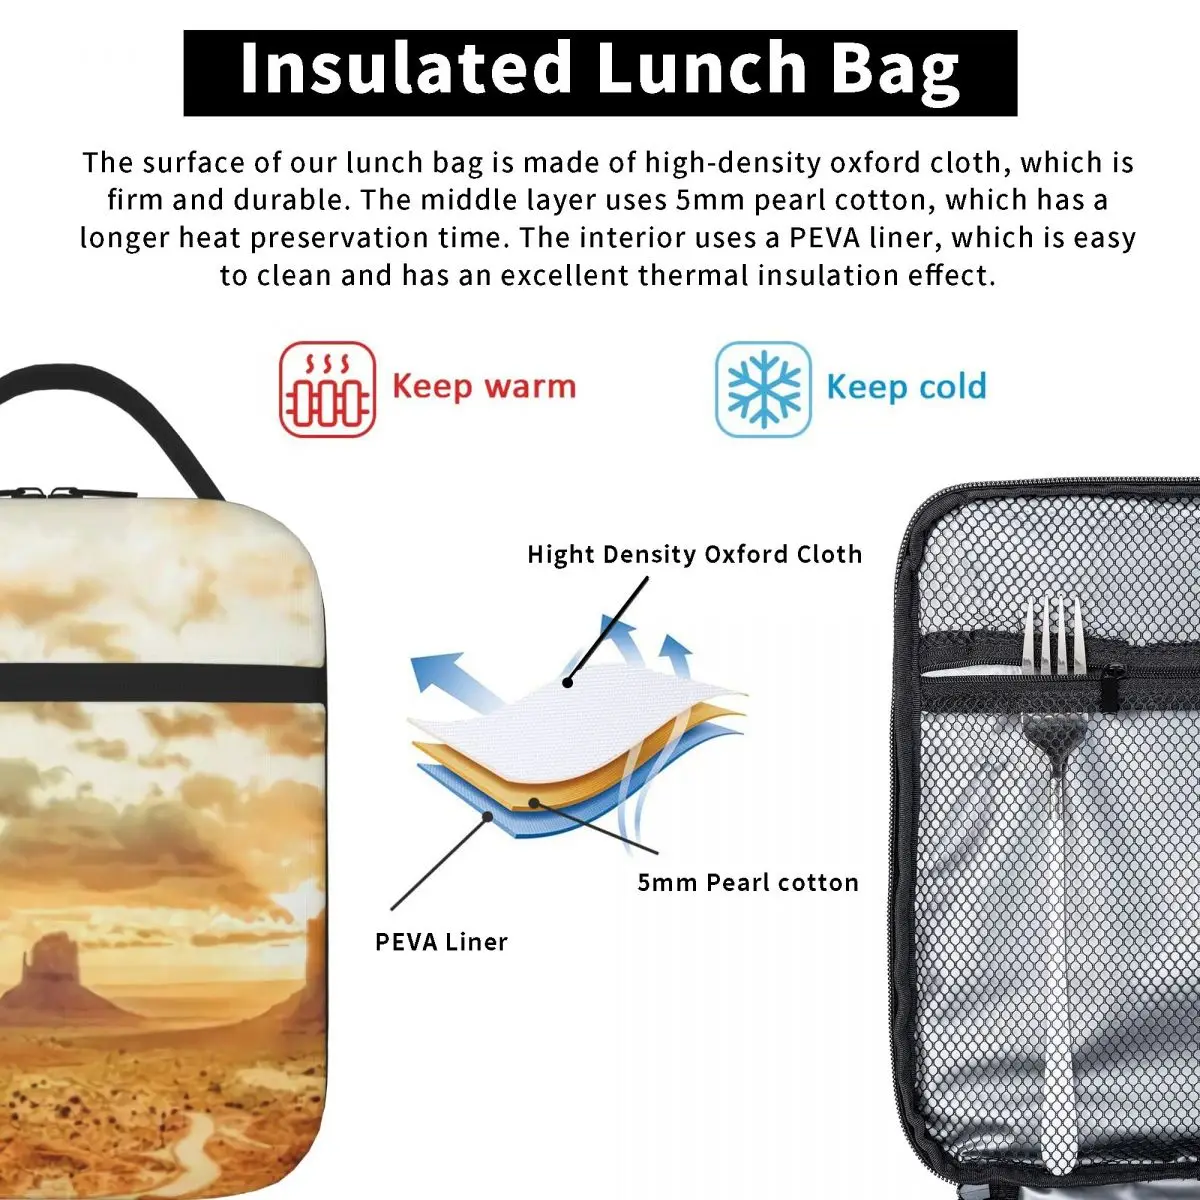 הטבע שחר - Monument Valley בד שולחן ארוחת הצהריים תיק פיקניק תרמו מזון תיק בית הספר הצהריים